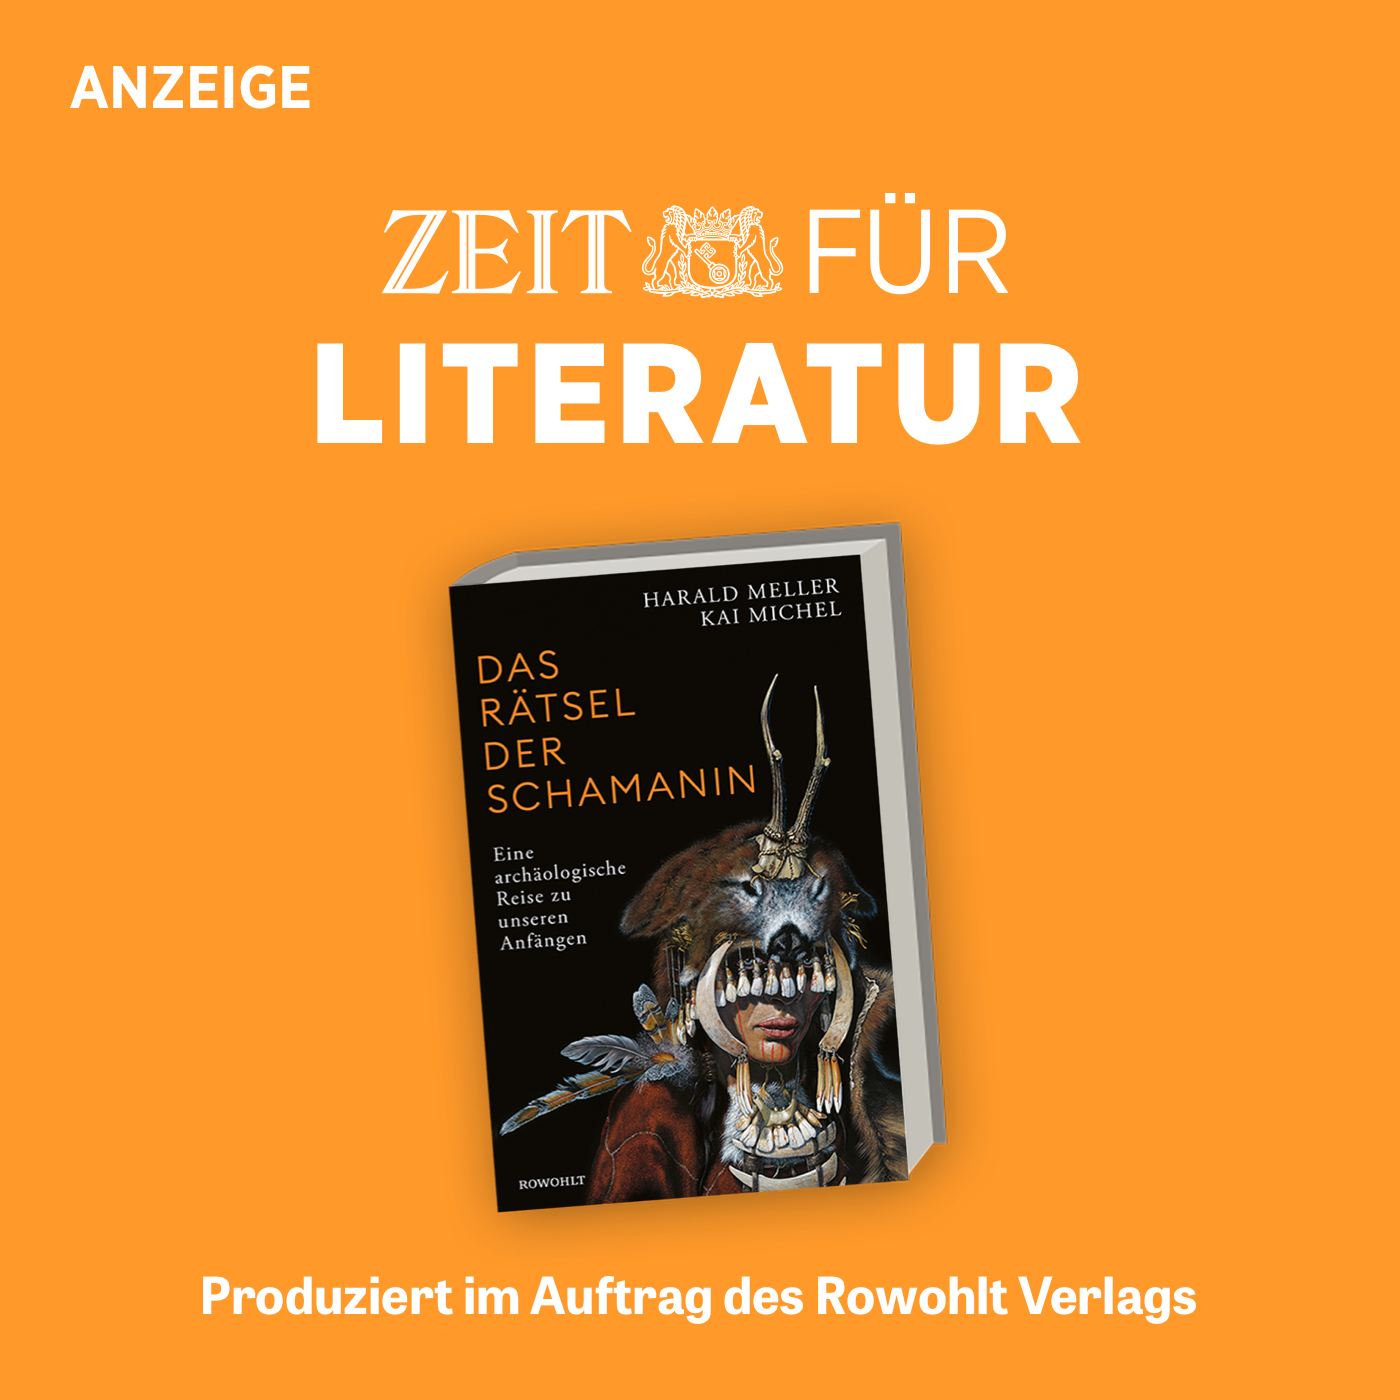 ZEIT für Literatur mit Harald Meller und Kai Michel